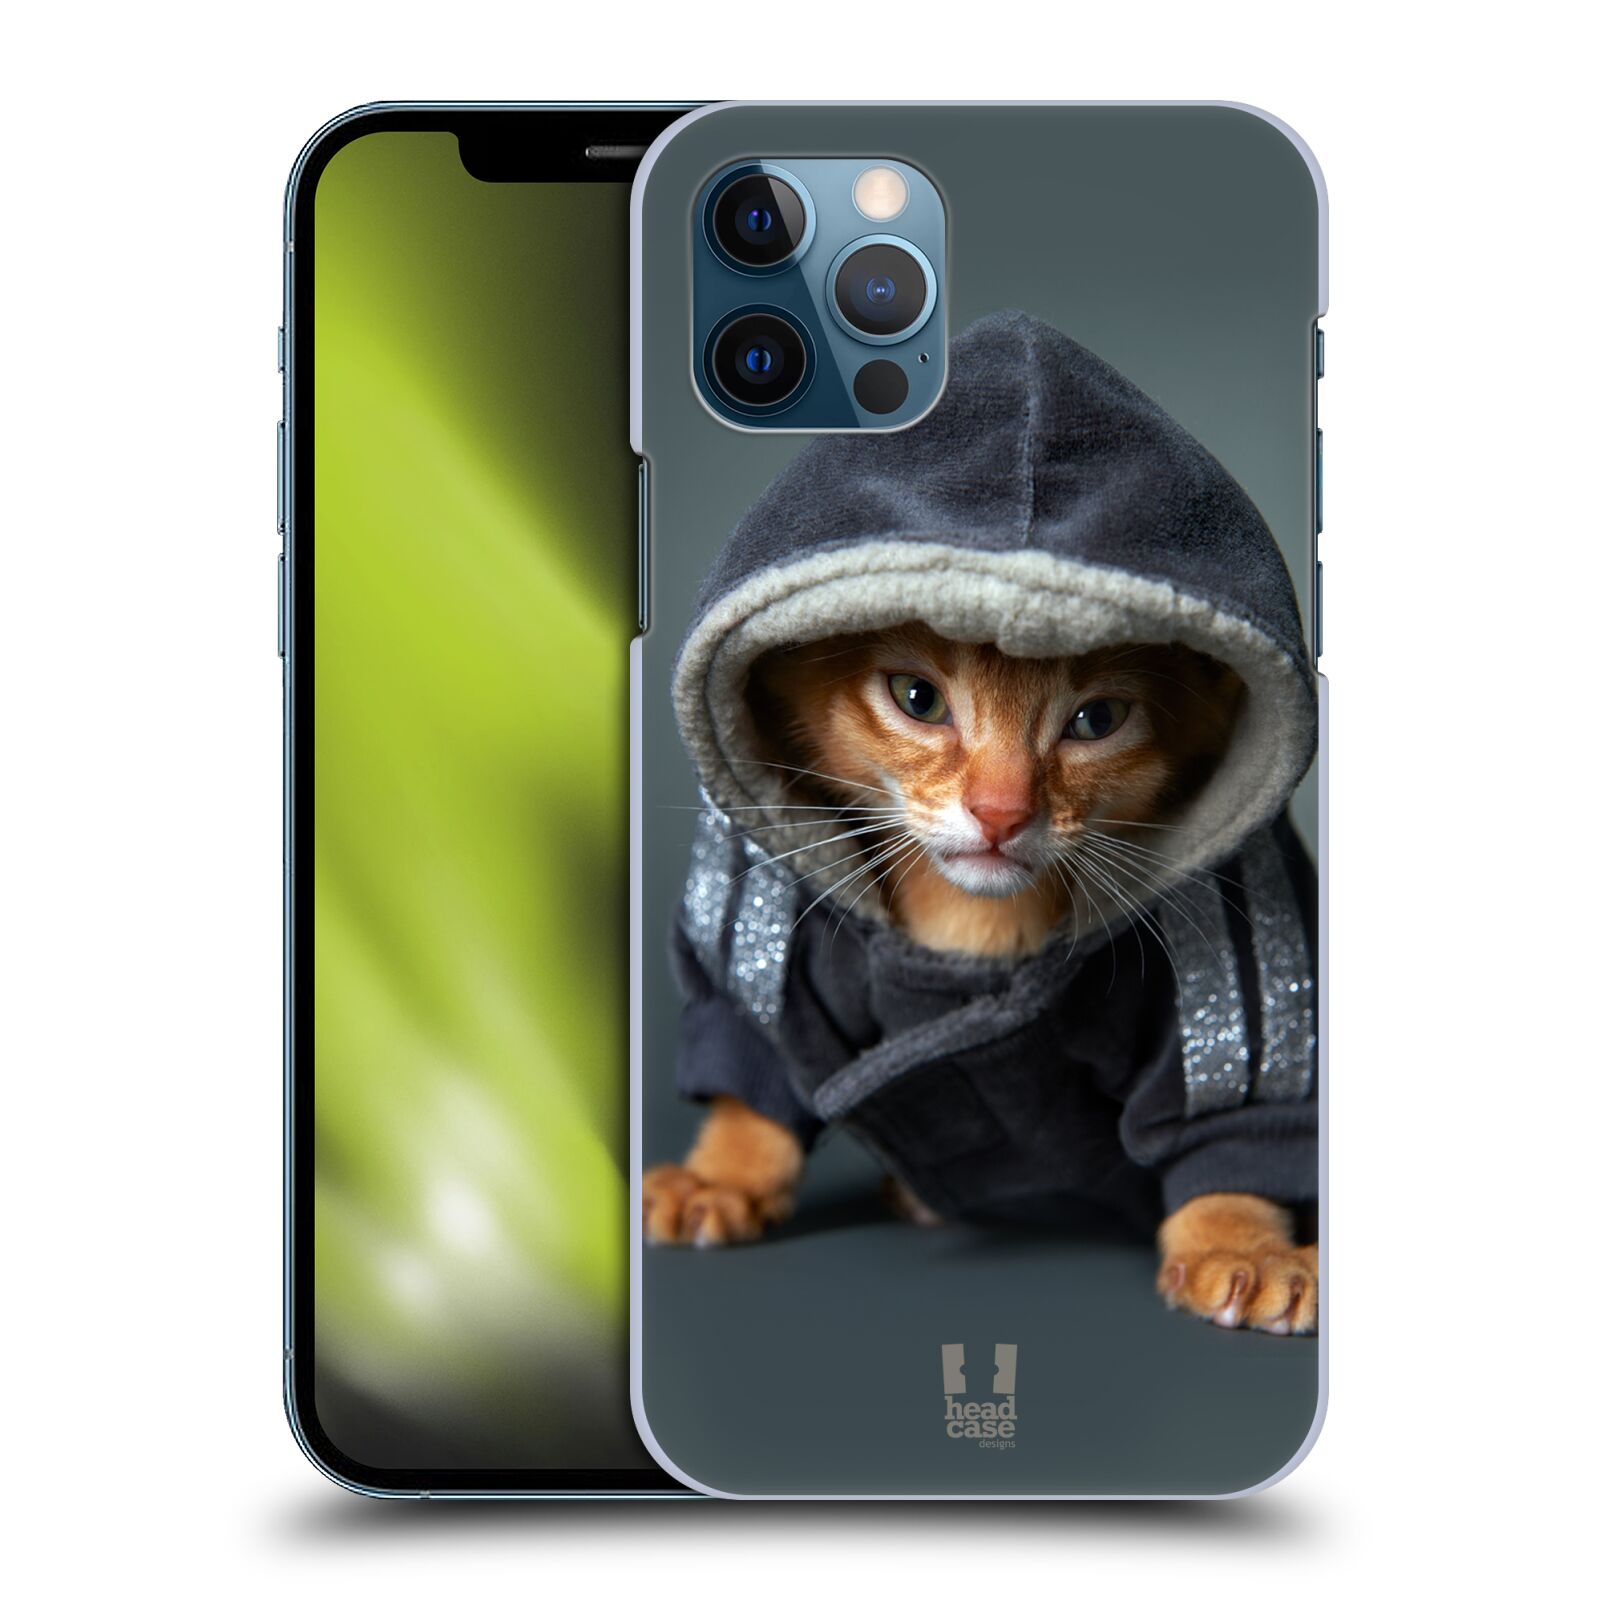 HEAD CASE plastový obal na mobil Apple Iphone 12 / Iphone 12 PRO vzor Legrační zvířátka kotě/kočička s kapucí